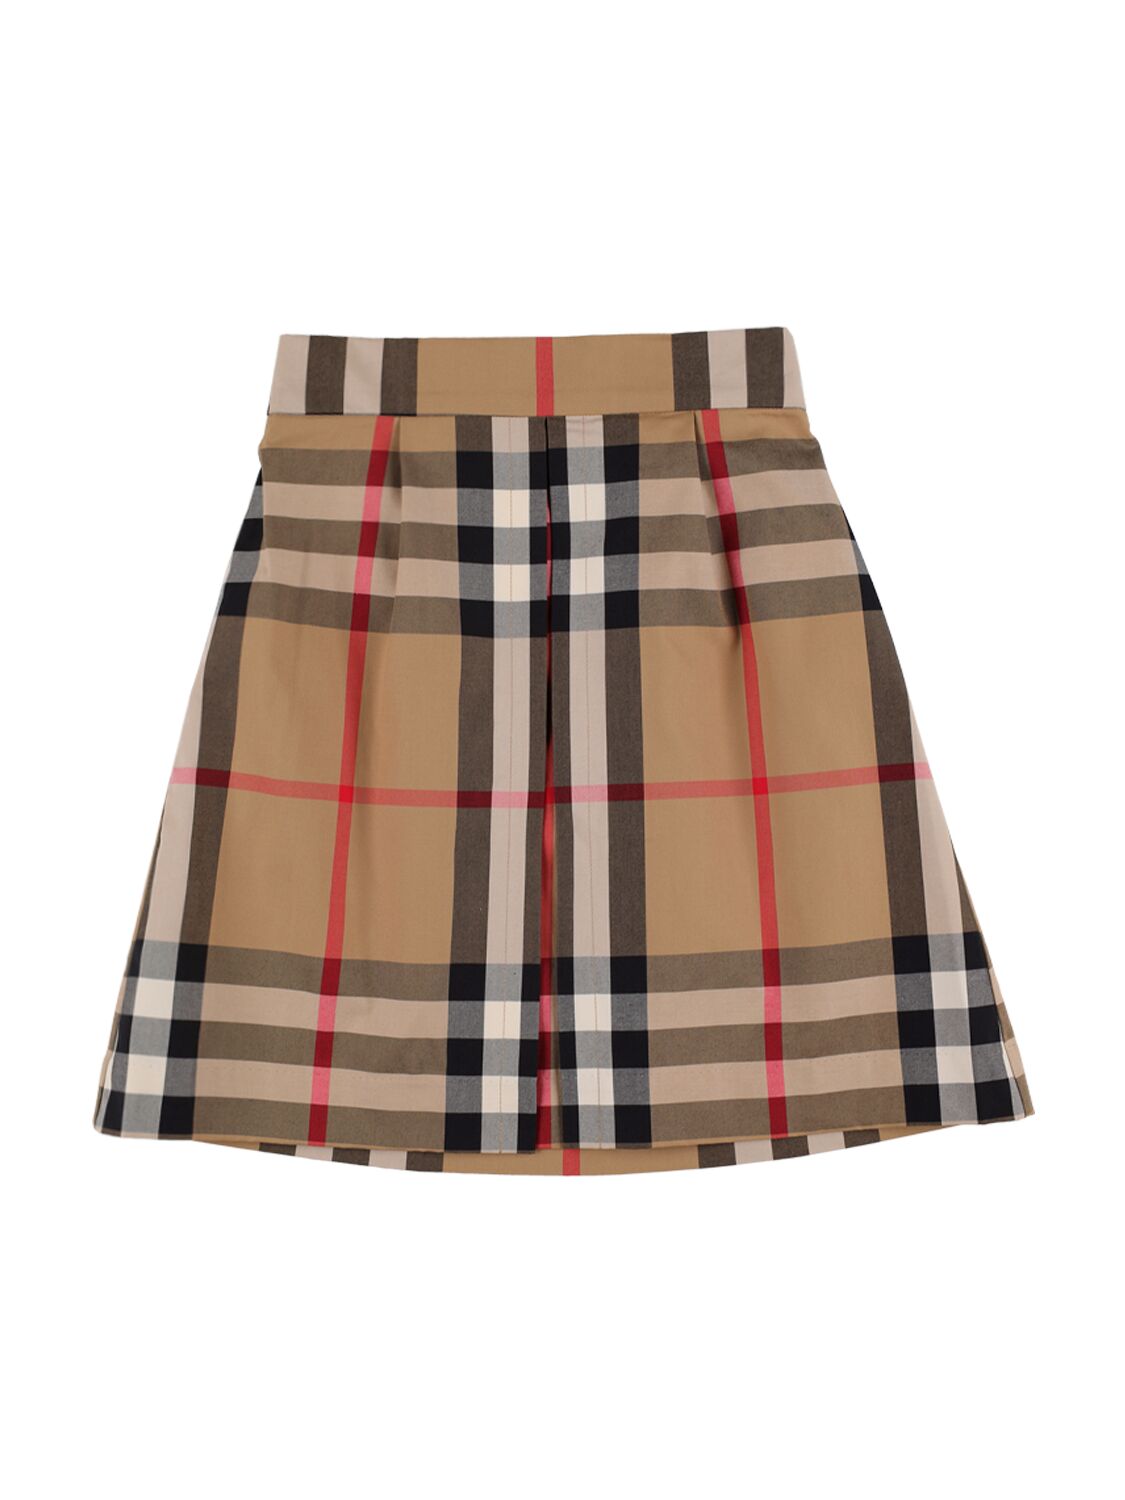 Image of Check Print Cotton Mini Skirt